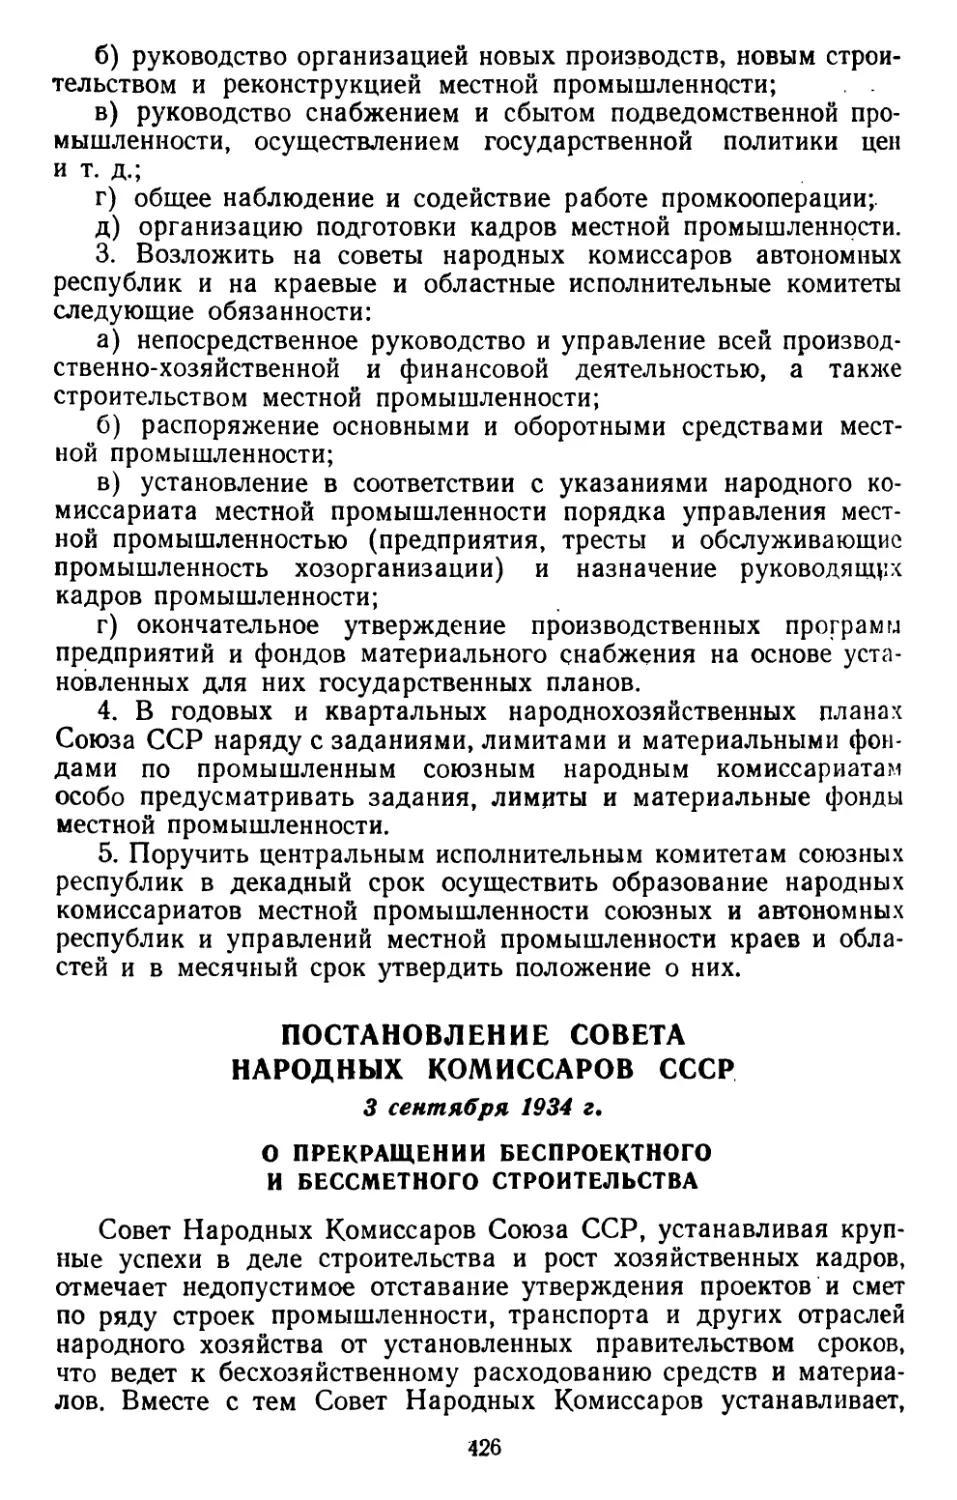 Постановление Совета Народных Комиссаров СССР, 3 сентября 1934 г. О прекращении беспроектного и бессметного строительства